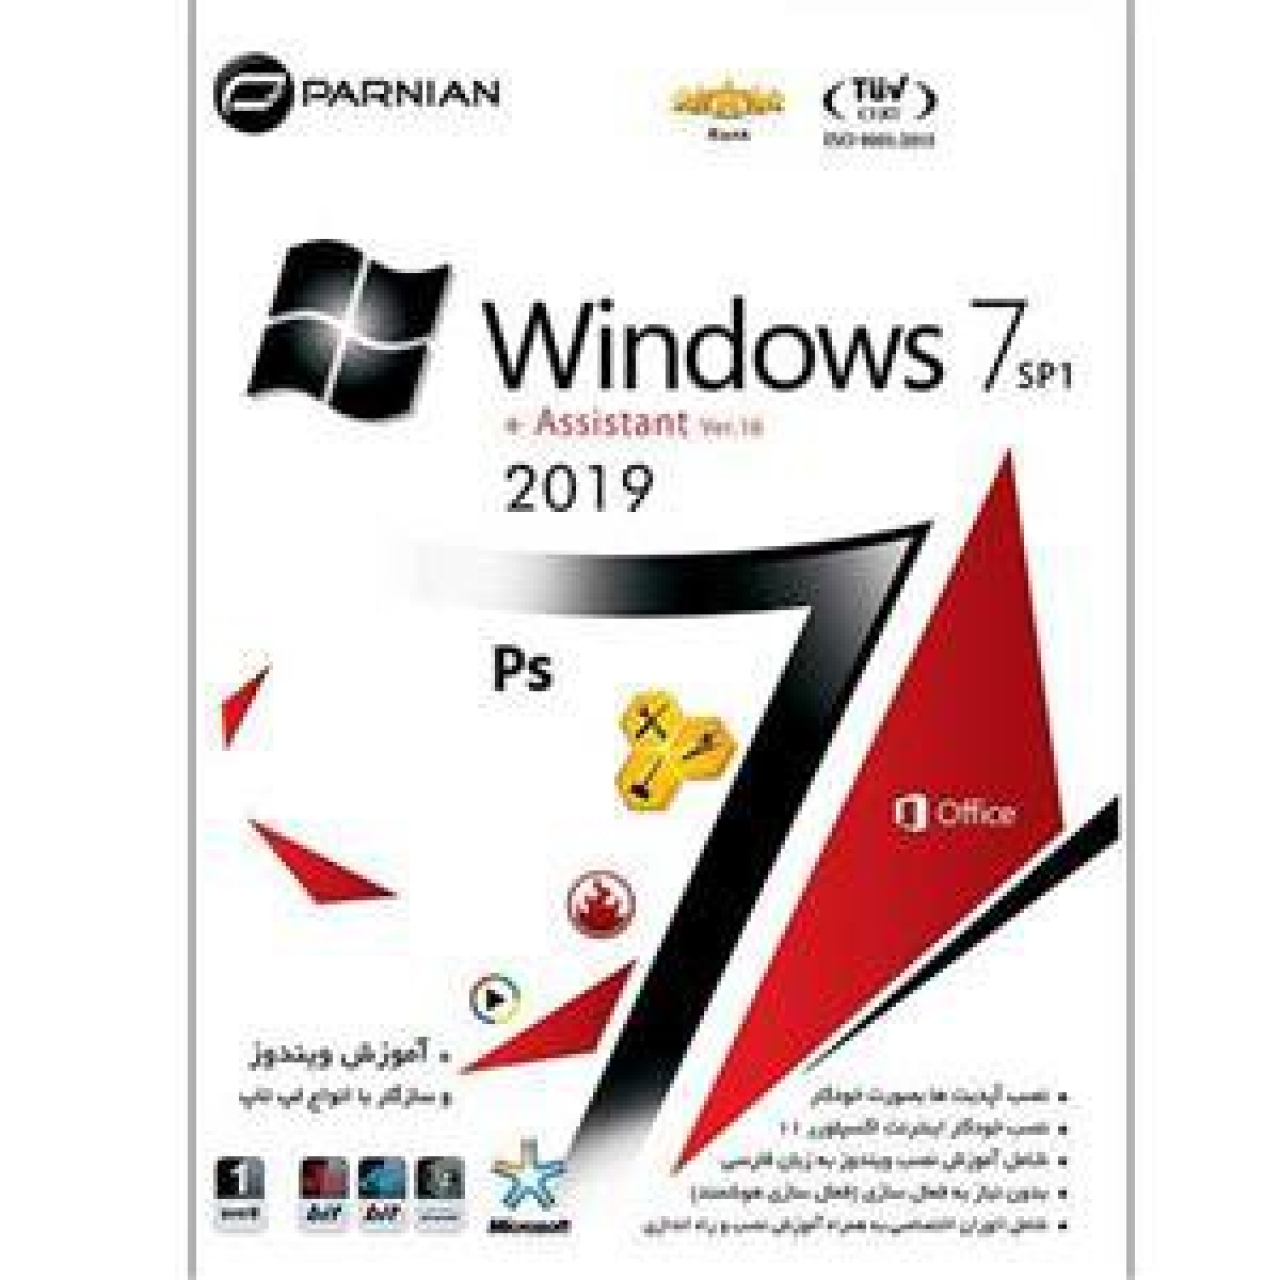 سیستم عامل Windows 7 نسخه 2019 SP1 + Assistant Ver.16 نشر پرنیان